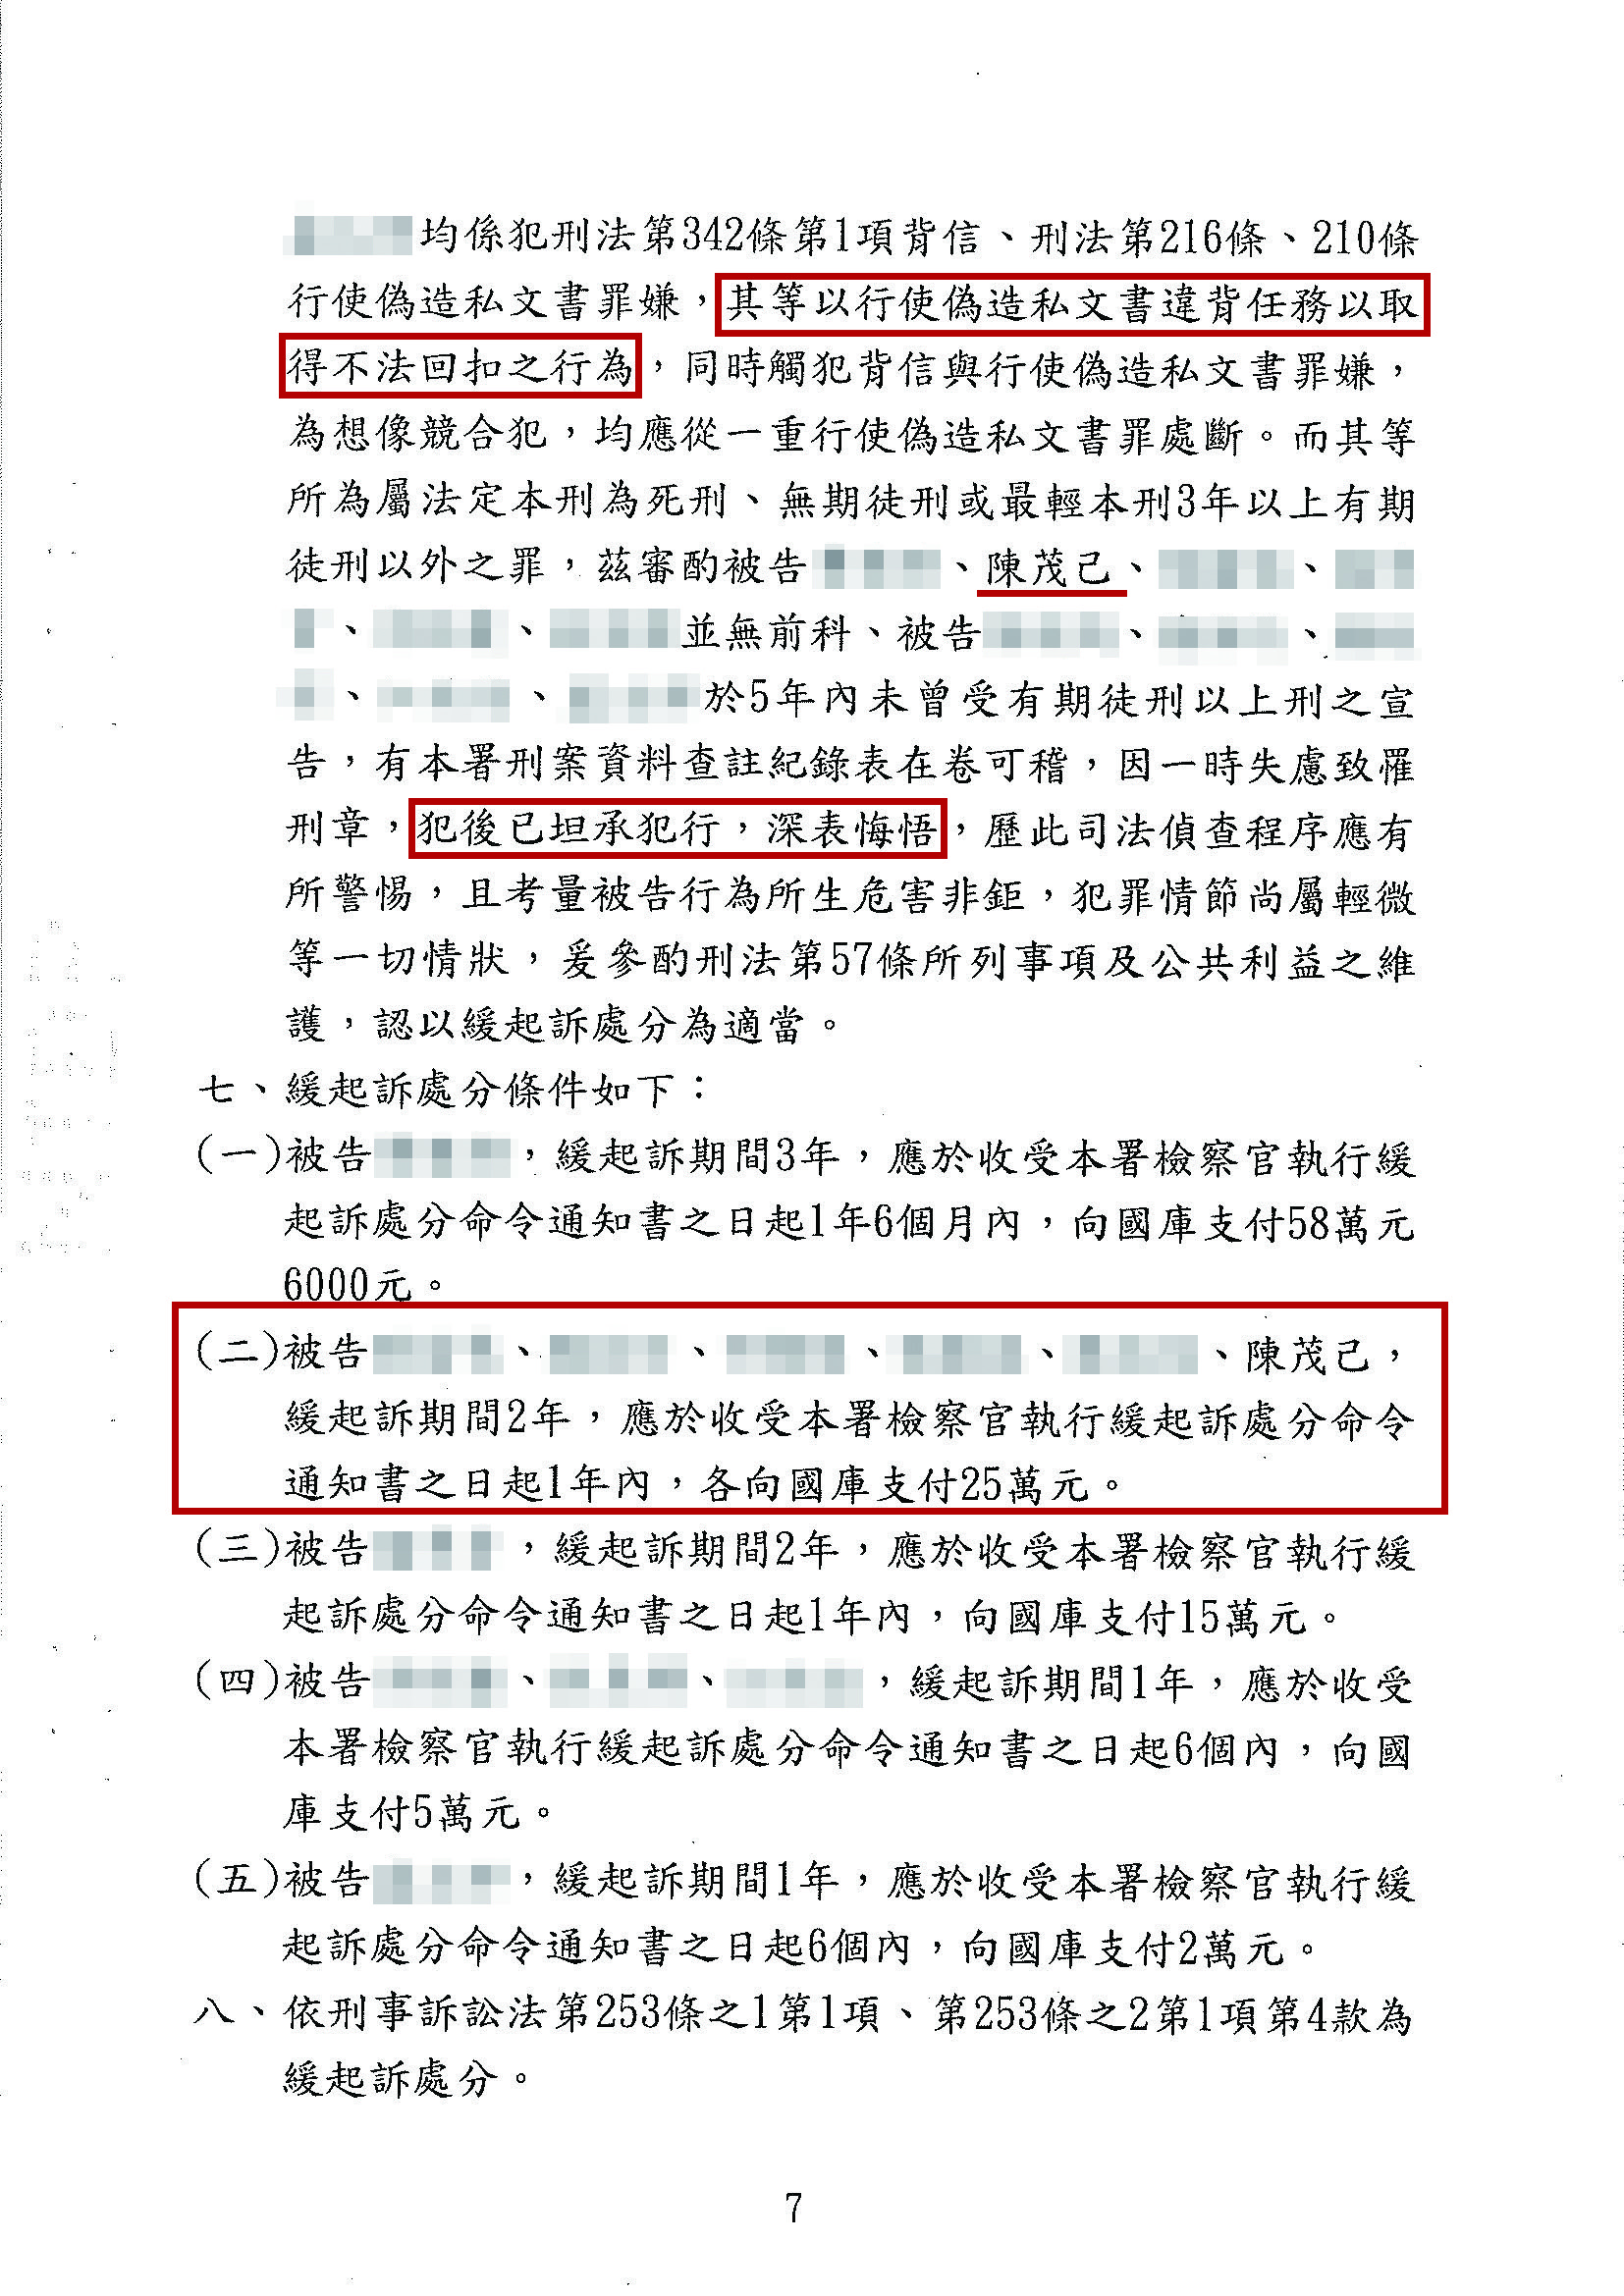 圖片說明：里長陳茂己受訪時堅不承認收回扣一事，慘遭投訴爆料者所提供的判決書打臉。(警政時報提供)